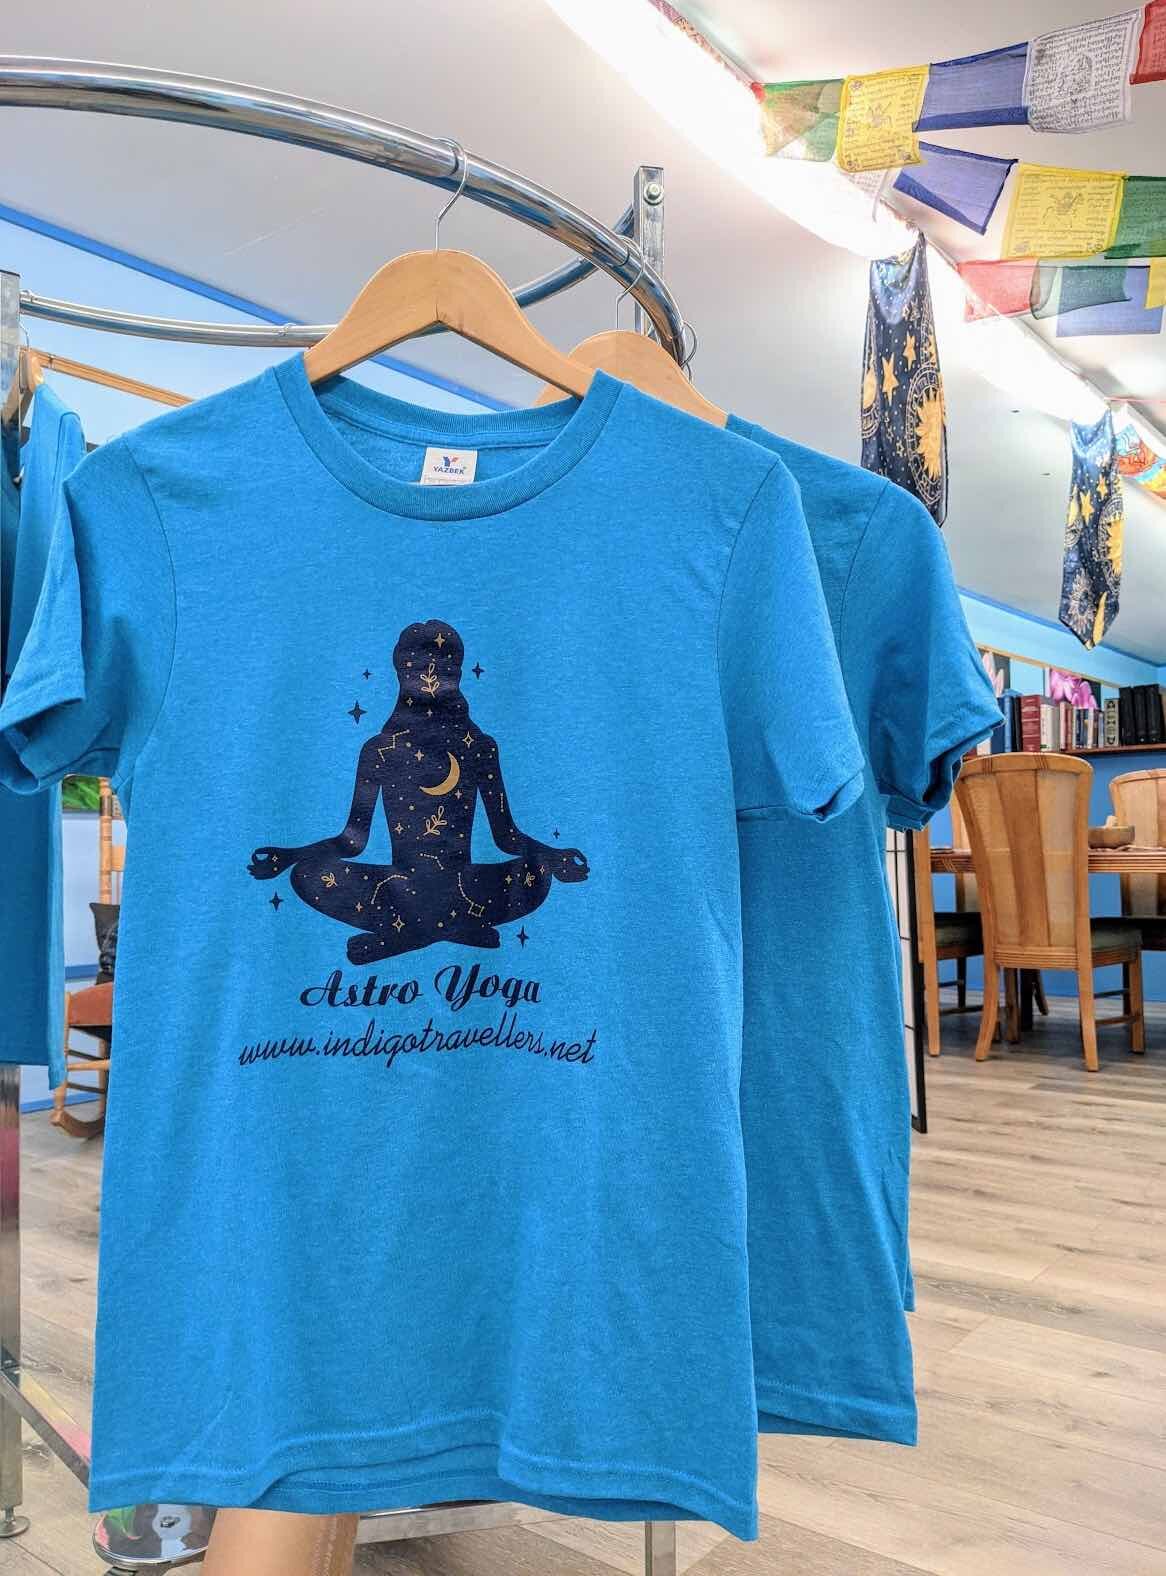 astro yoga shirt.jpg